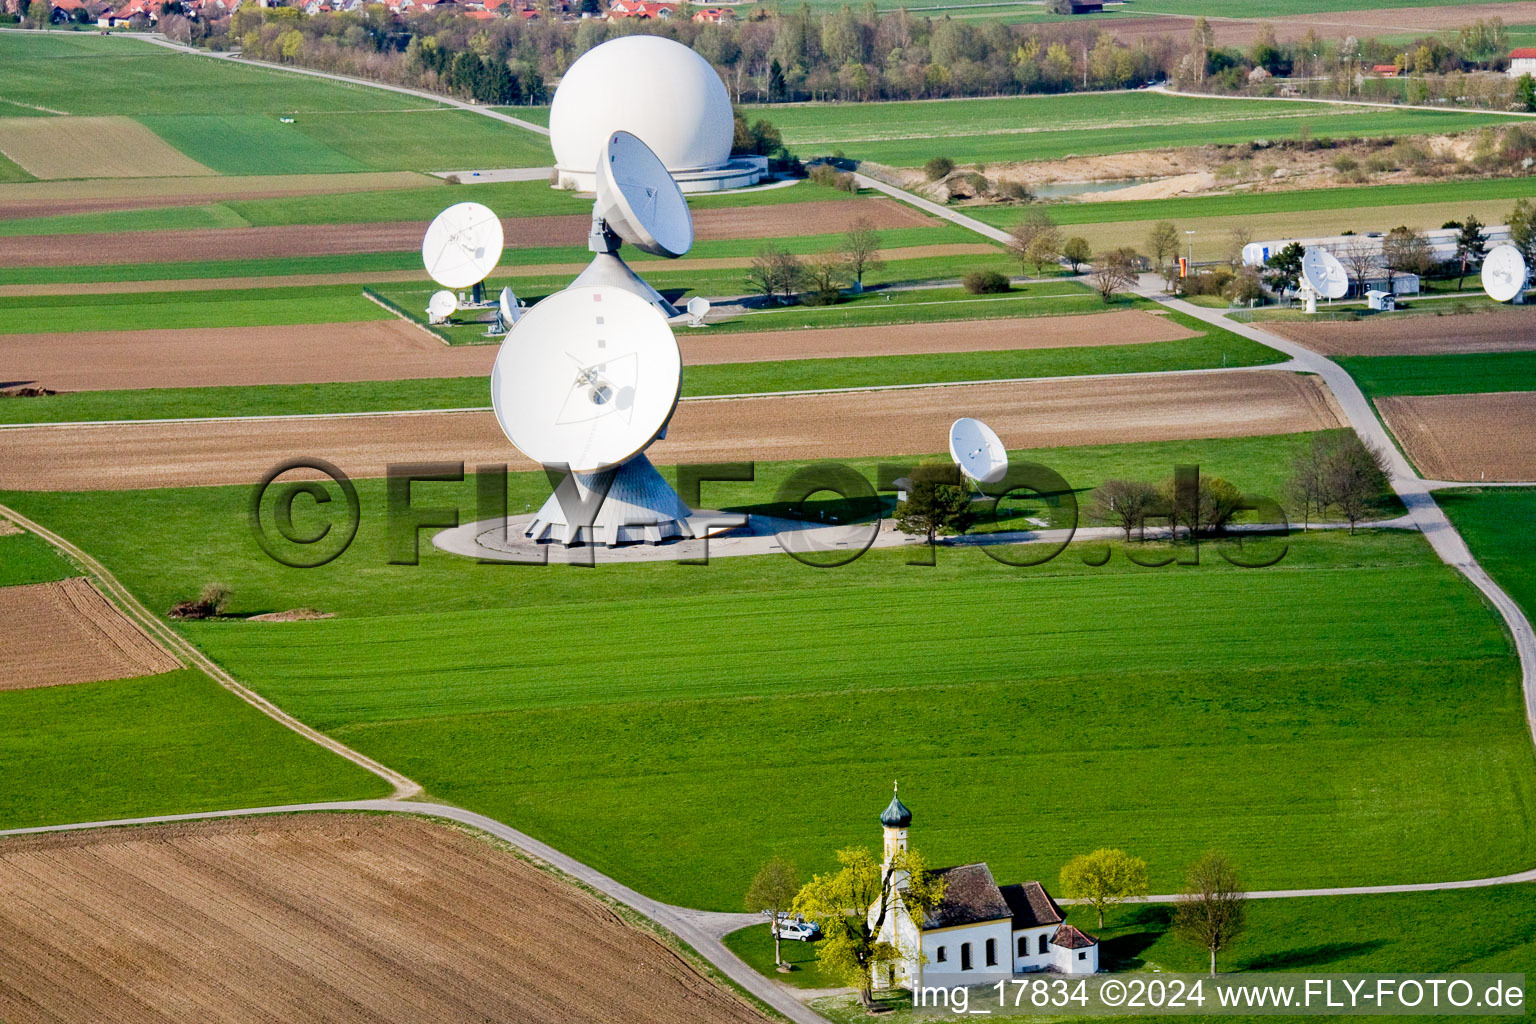 Luftbild von Parabolspiegel von Satellitenschüsseln der Erdfunkstelle Raisting am Hofstätterweg in Raisting im Bundesland Bayern, Deutschland